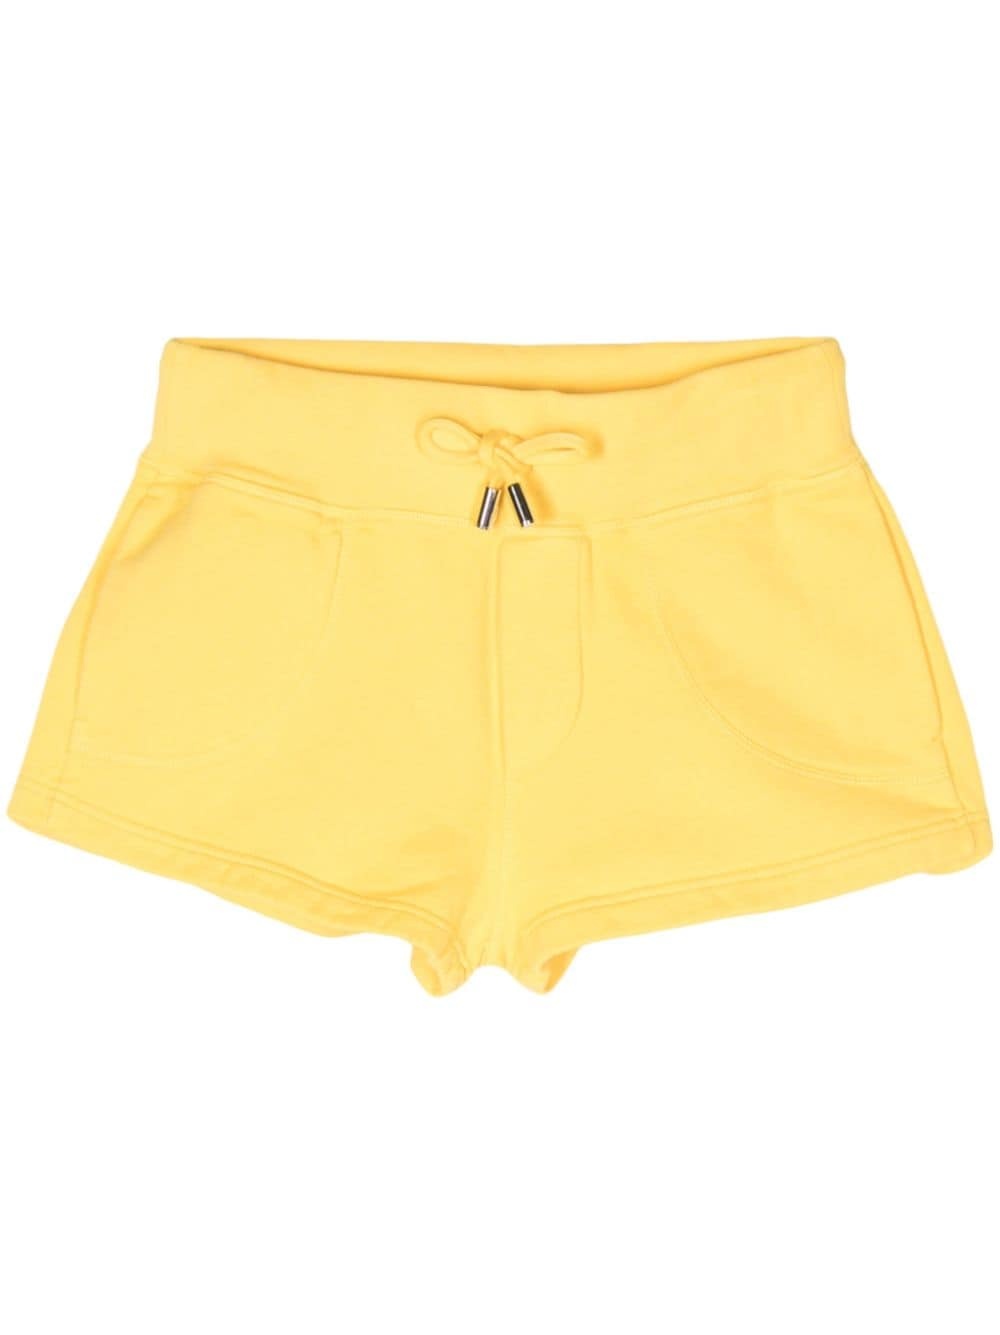 D2 cotton shorts - 1